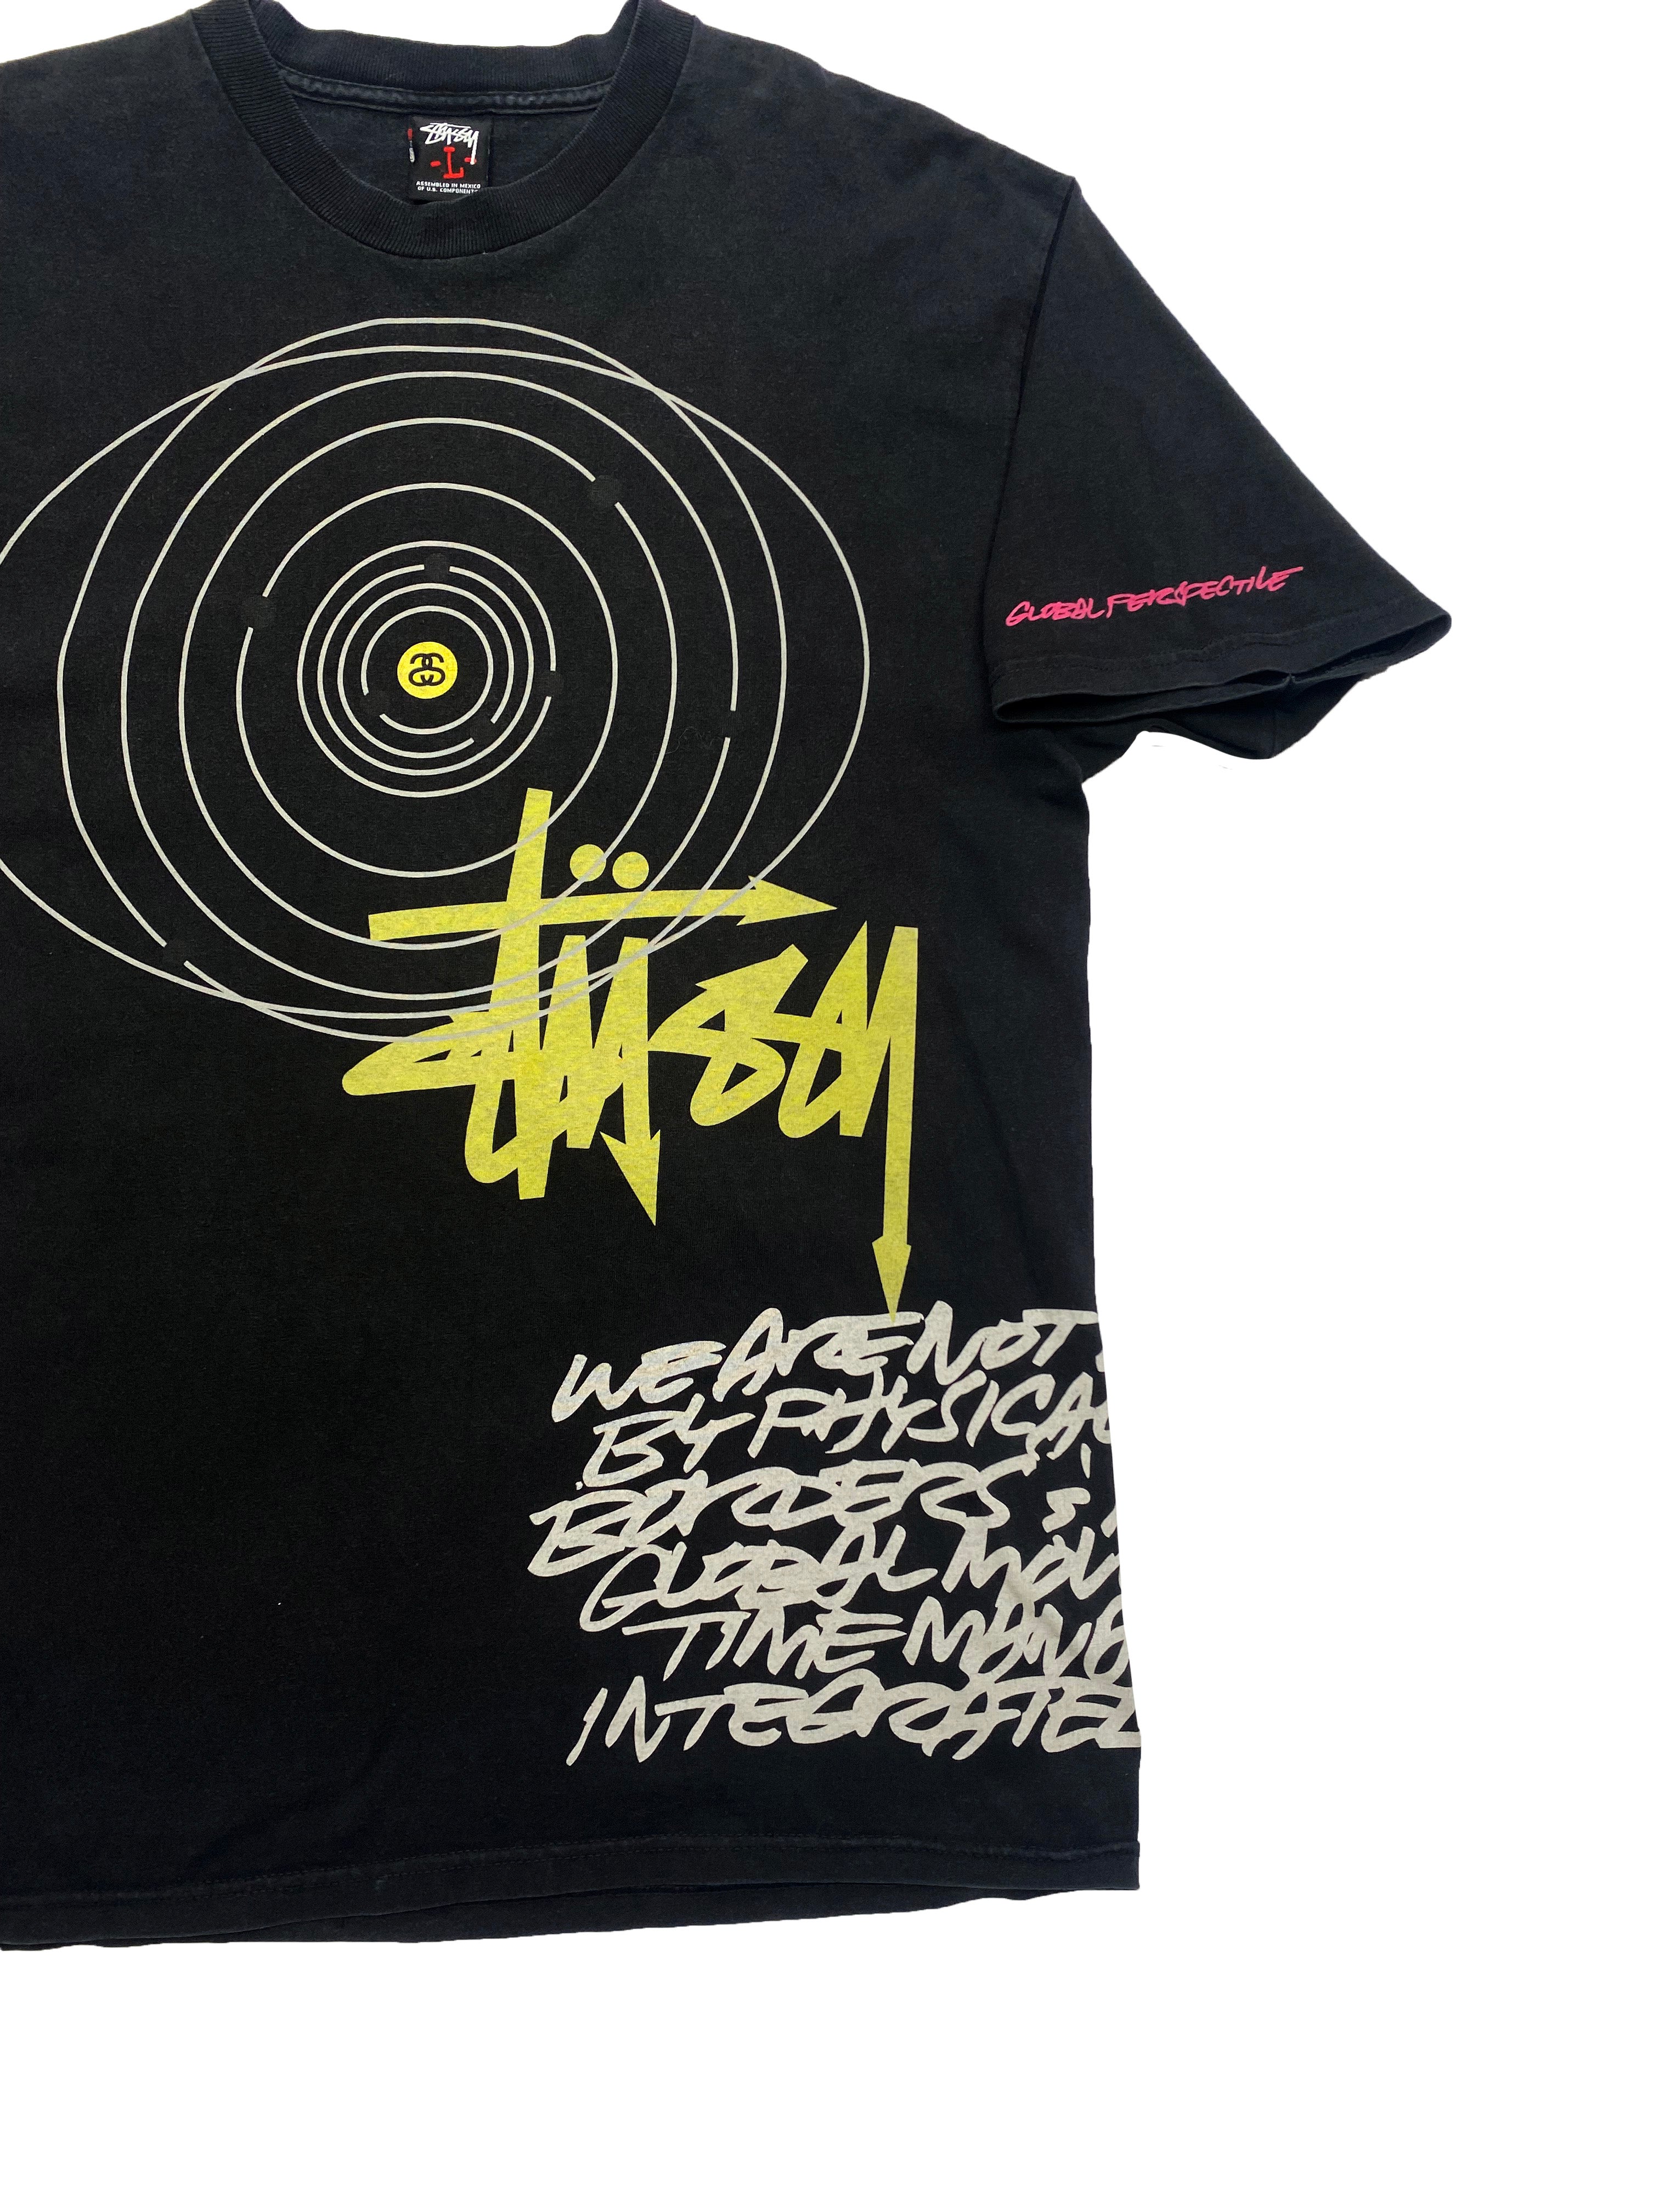 Stussy x Futura T-shirt 00's